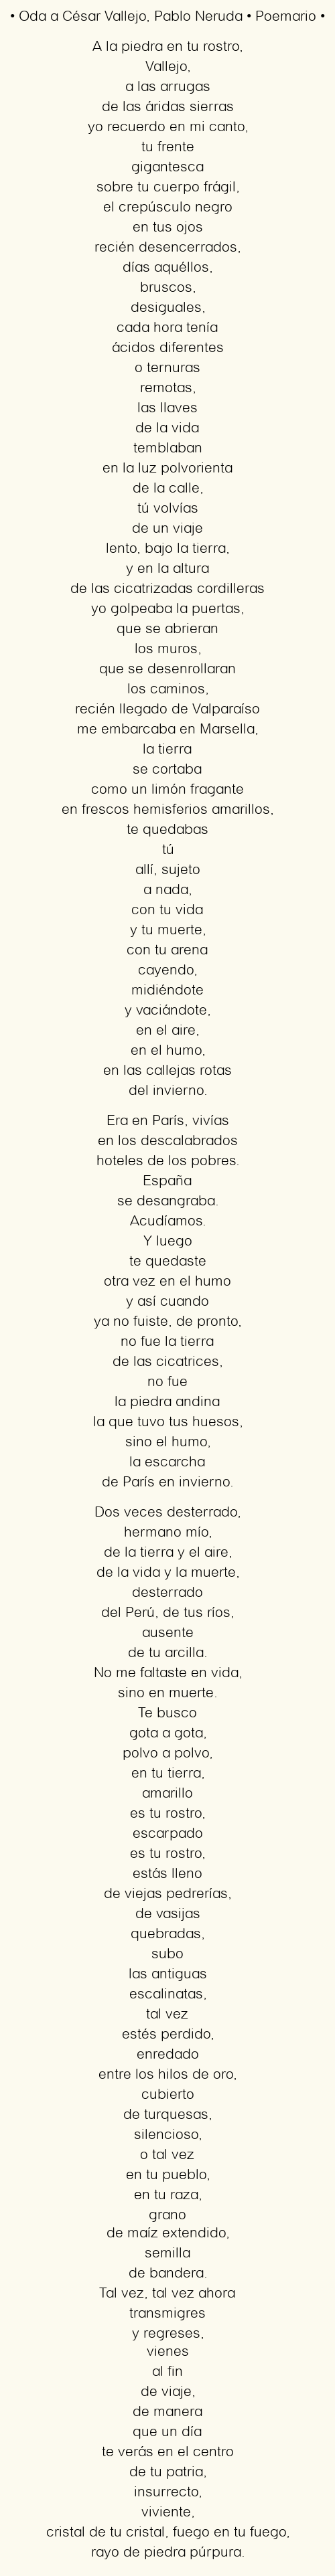 Imagen con el poema Oda a César Vallejo, por Pablo Neruda